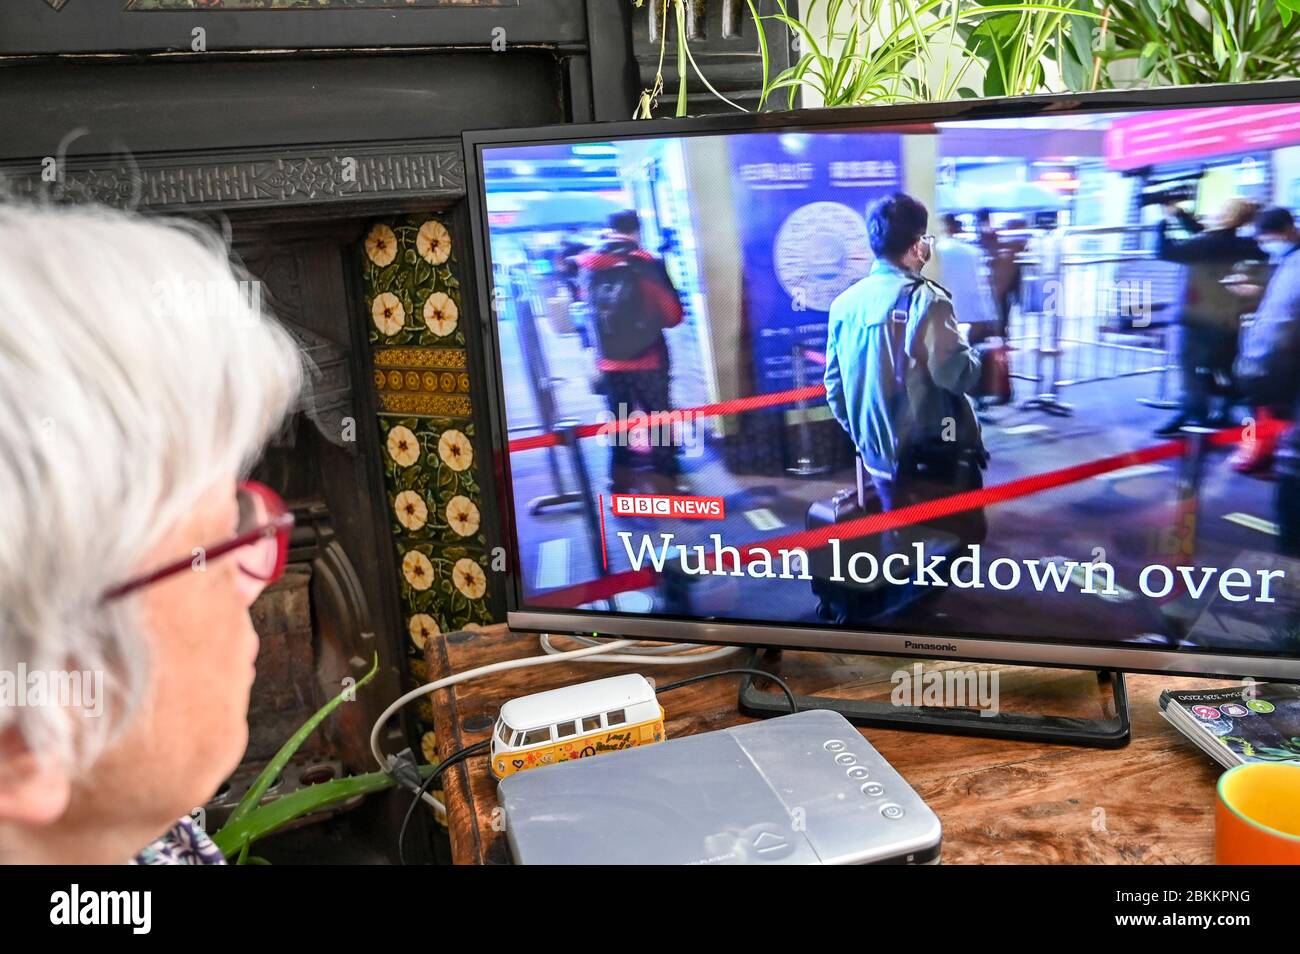 Une femme regardant les nouvelles de la BBC avec des développements à Wuhan, en Chine, concernant Covid-19 avec le titre "Wuhan LockDown Over". Banque D'Images